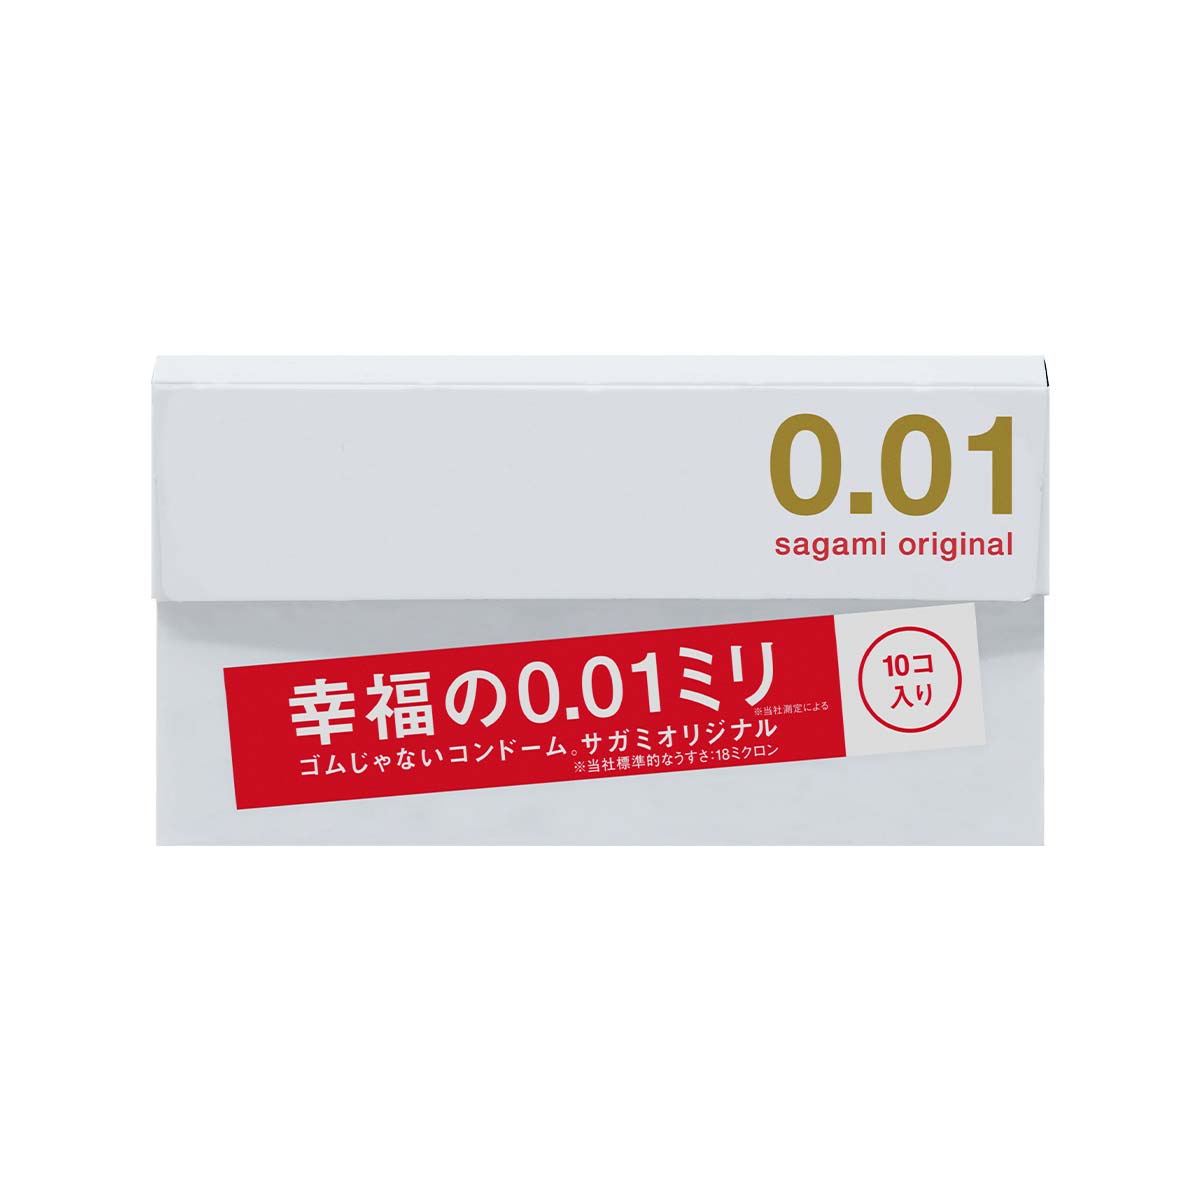 Sagami Original 0.01 10's Pack PU Condom-p_2